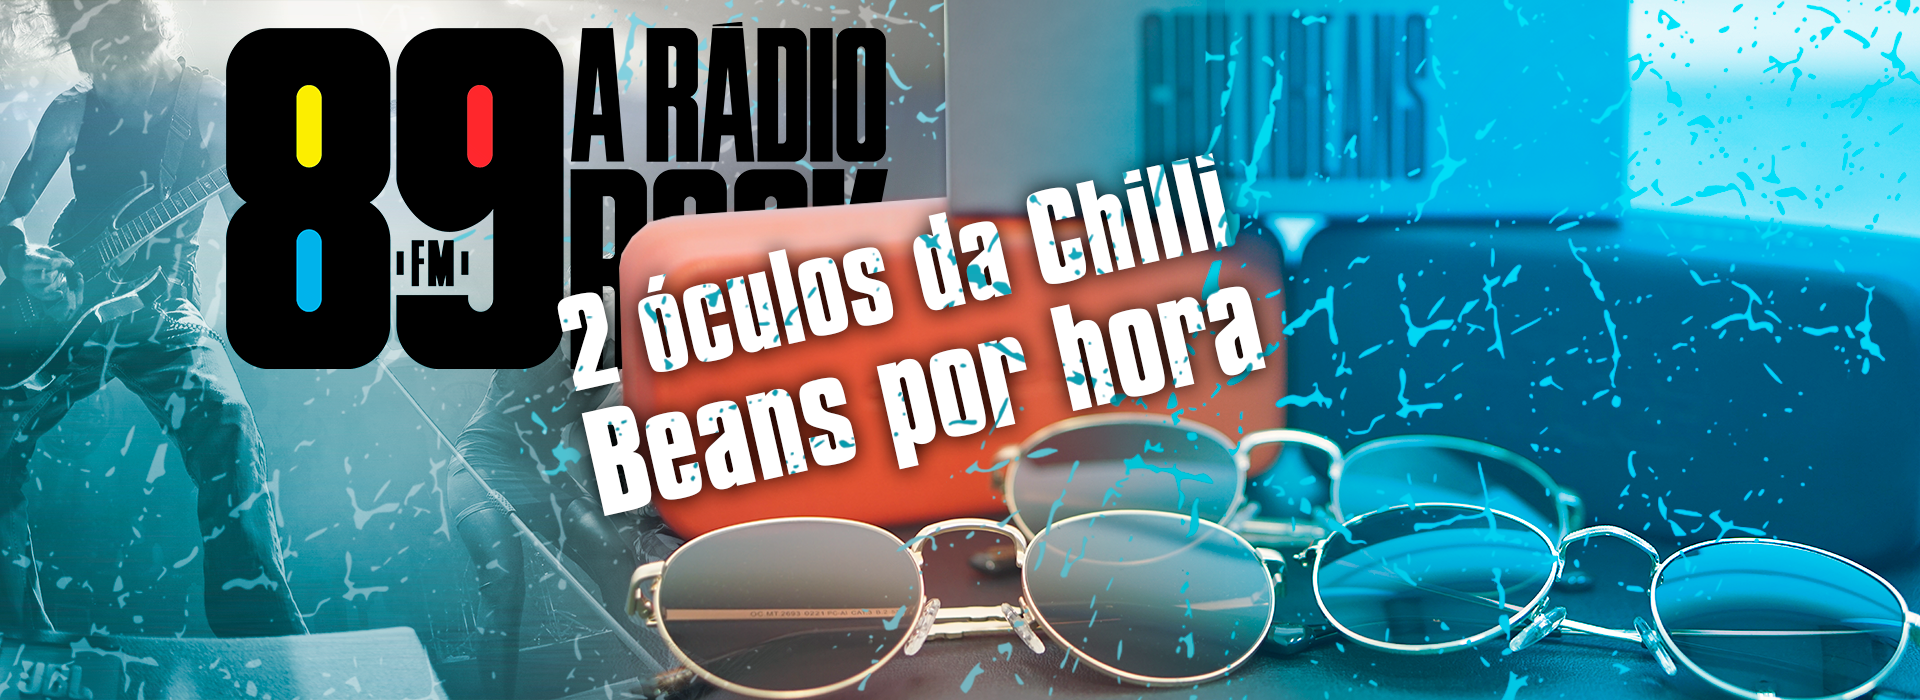 Dia Mundial do Rock: 2 óculos por hora da Chilli Beans